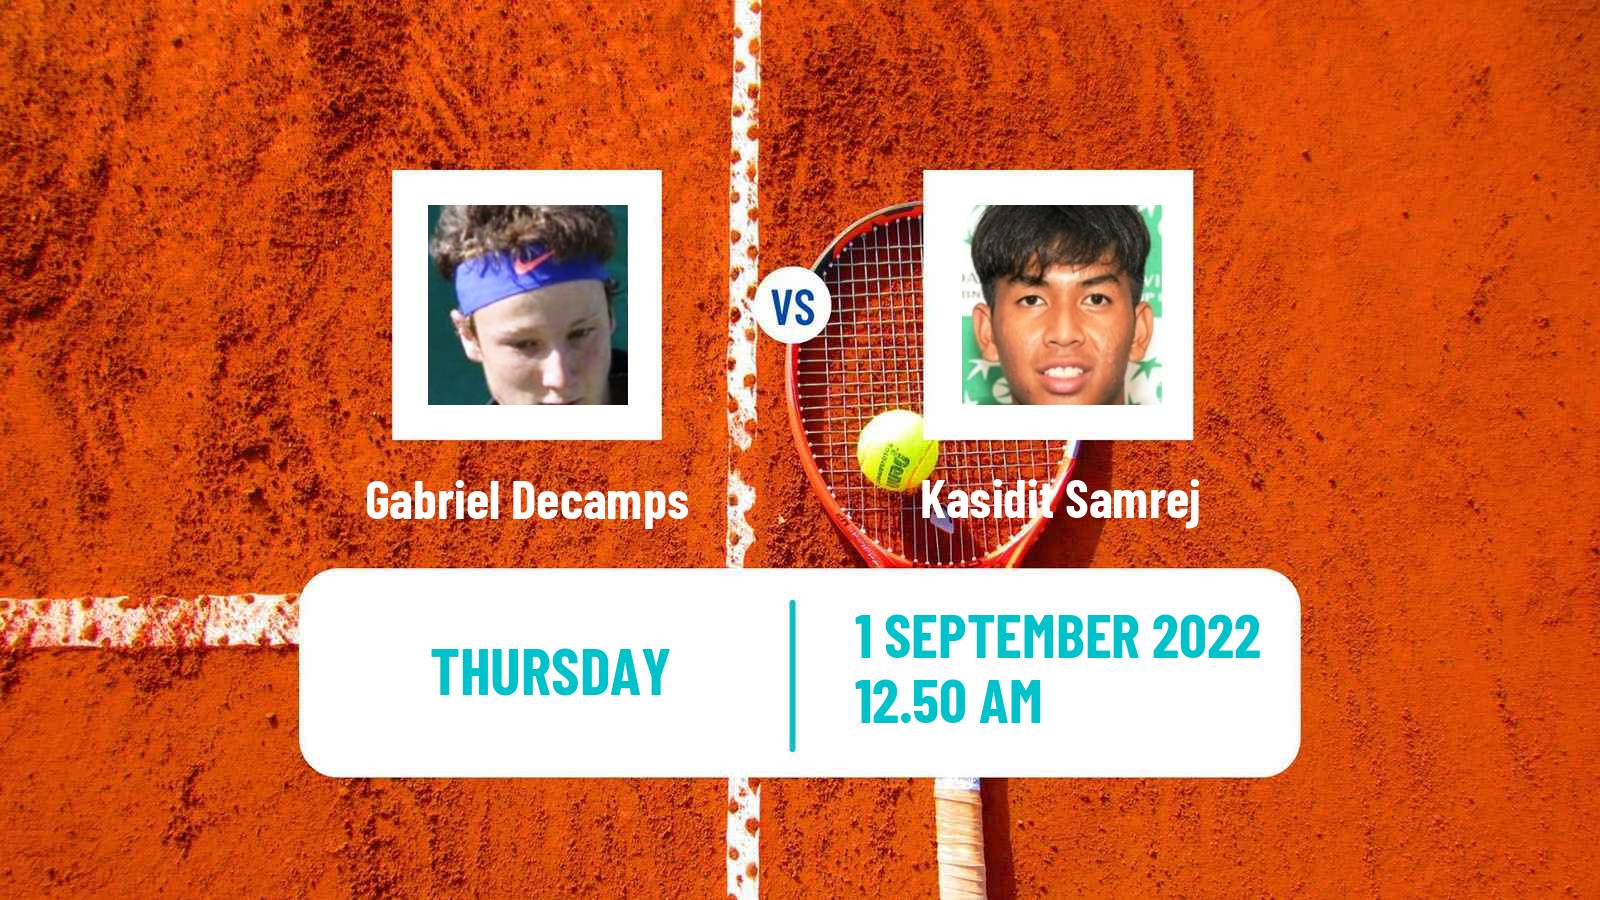 Tennis ATP Challenger Gabriel Decamps - Kasidit Samrej